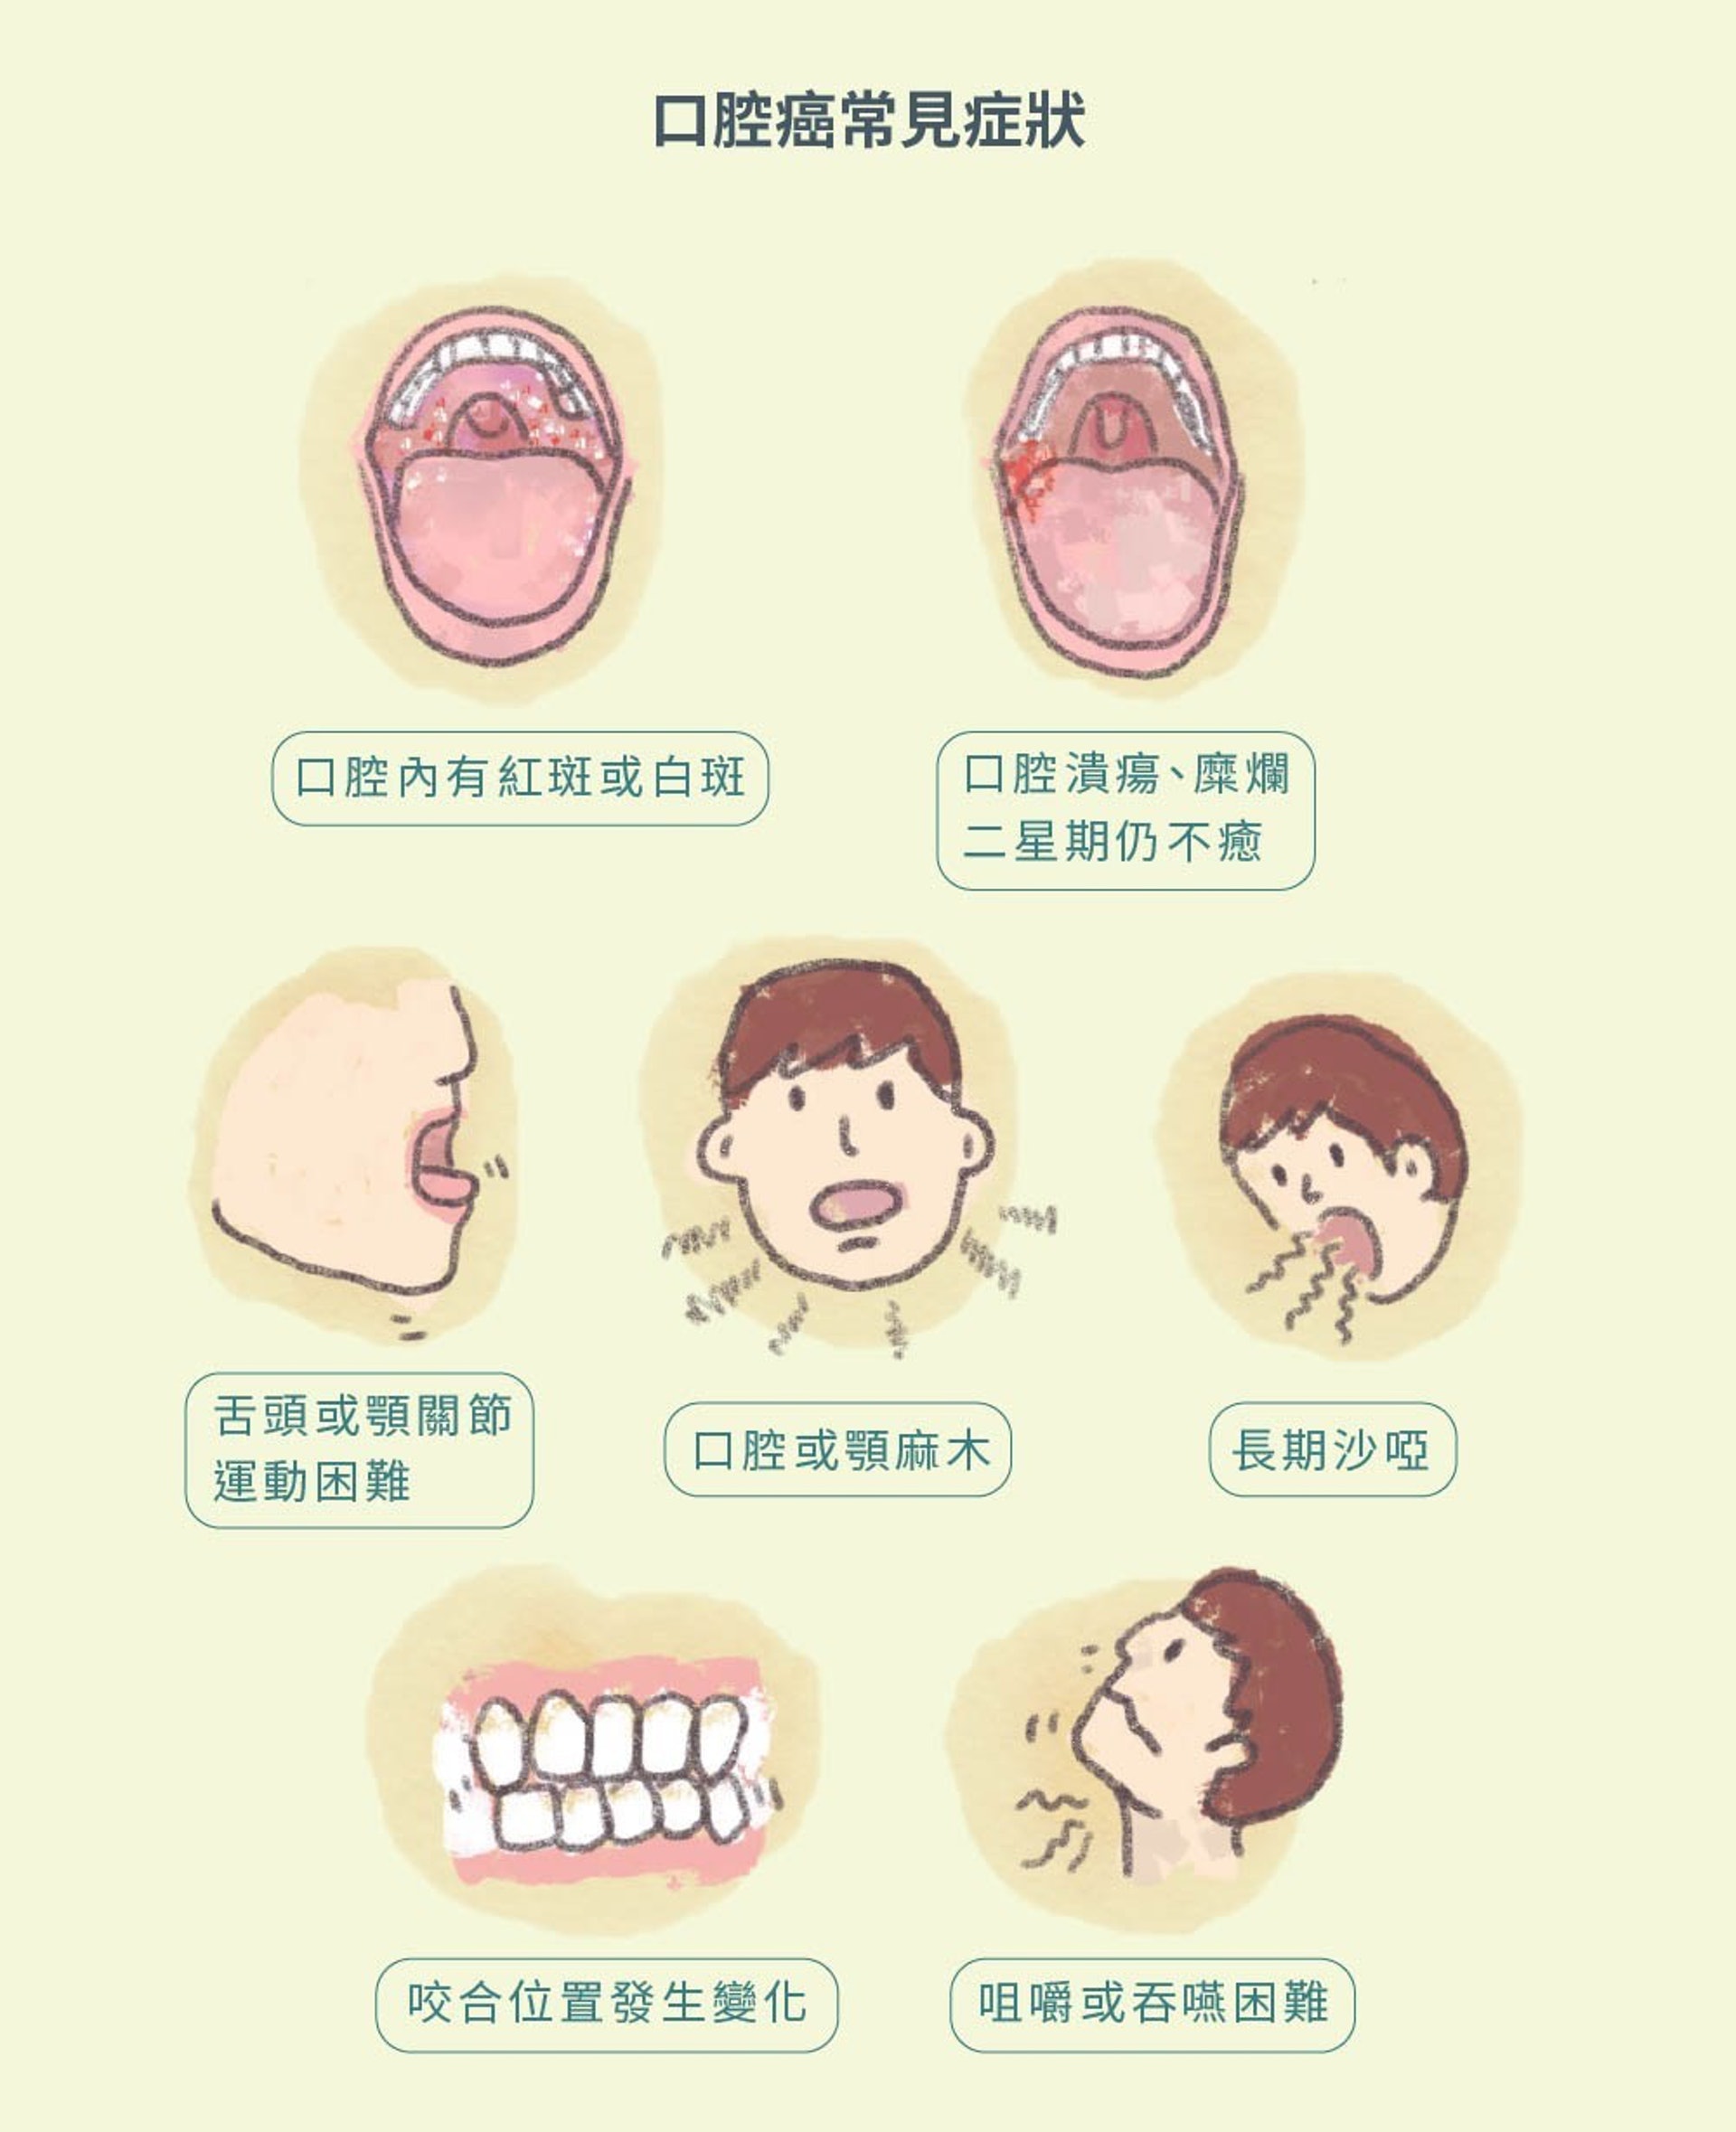 口腔癌一旦出現，惡化速度極快。初到外國的人未必可以即時接受牙科檢查或治療，有機會導致延誤治療，後果嚴重。（圖片：ihealth）